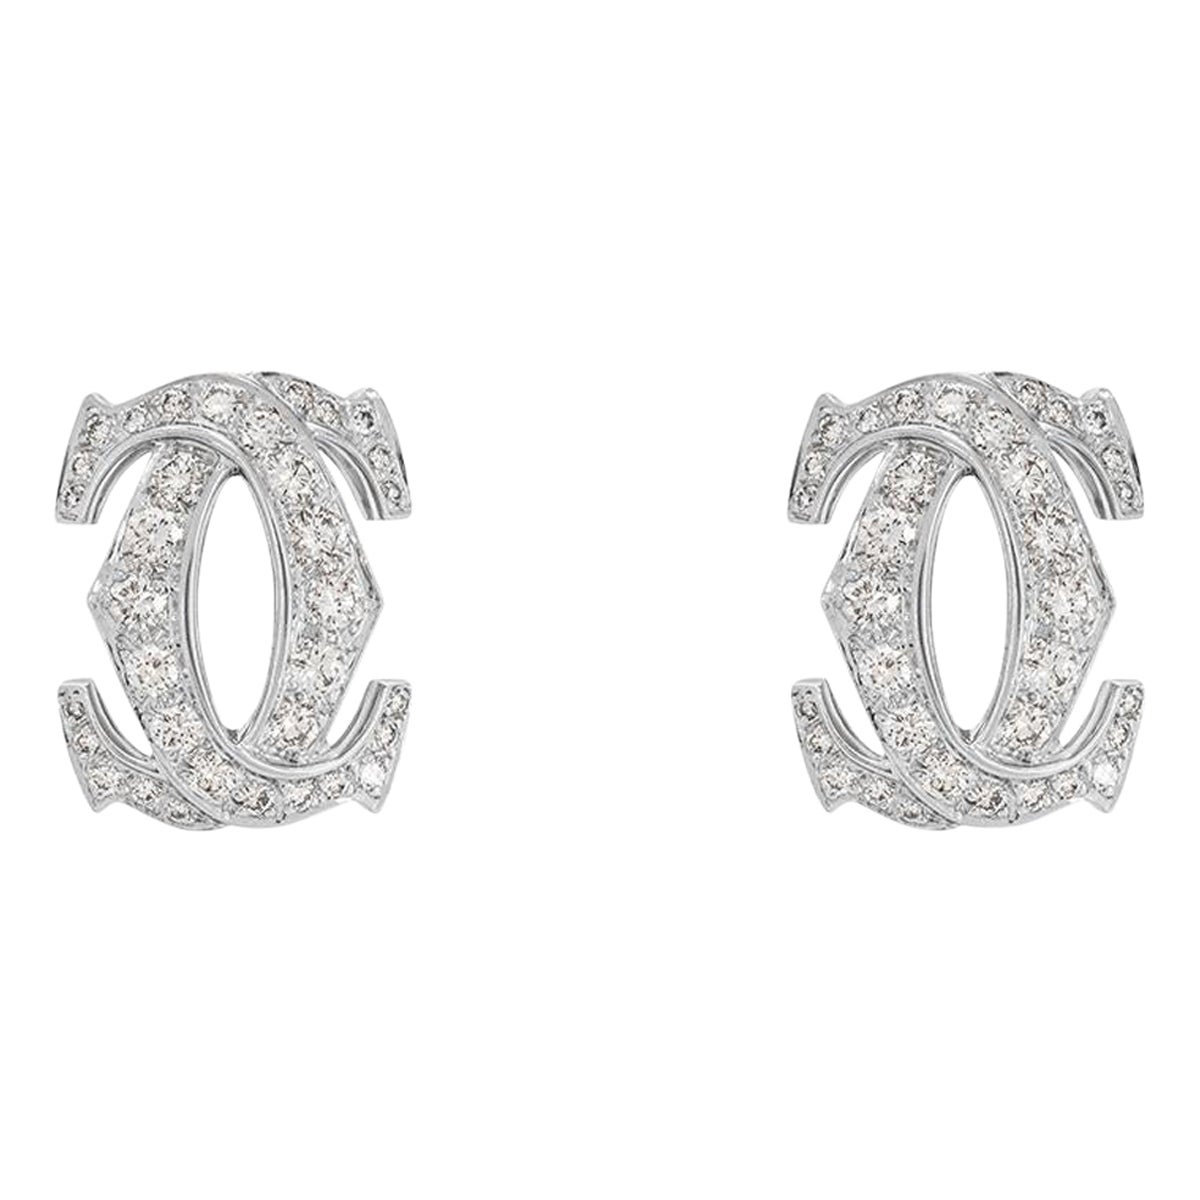 Cartier Diamond Penelope Large Double C Earrings